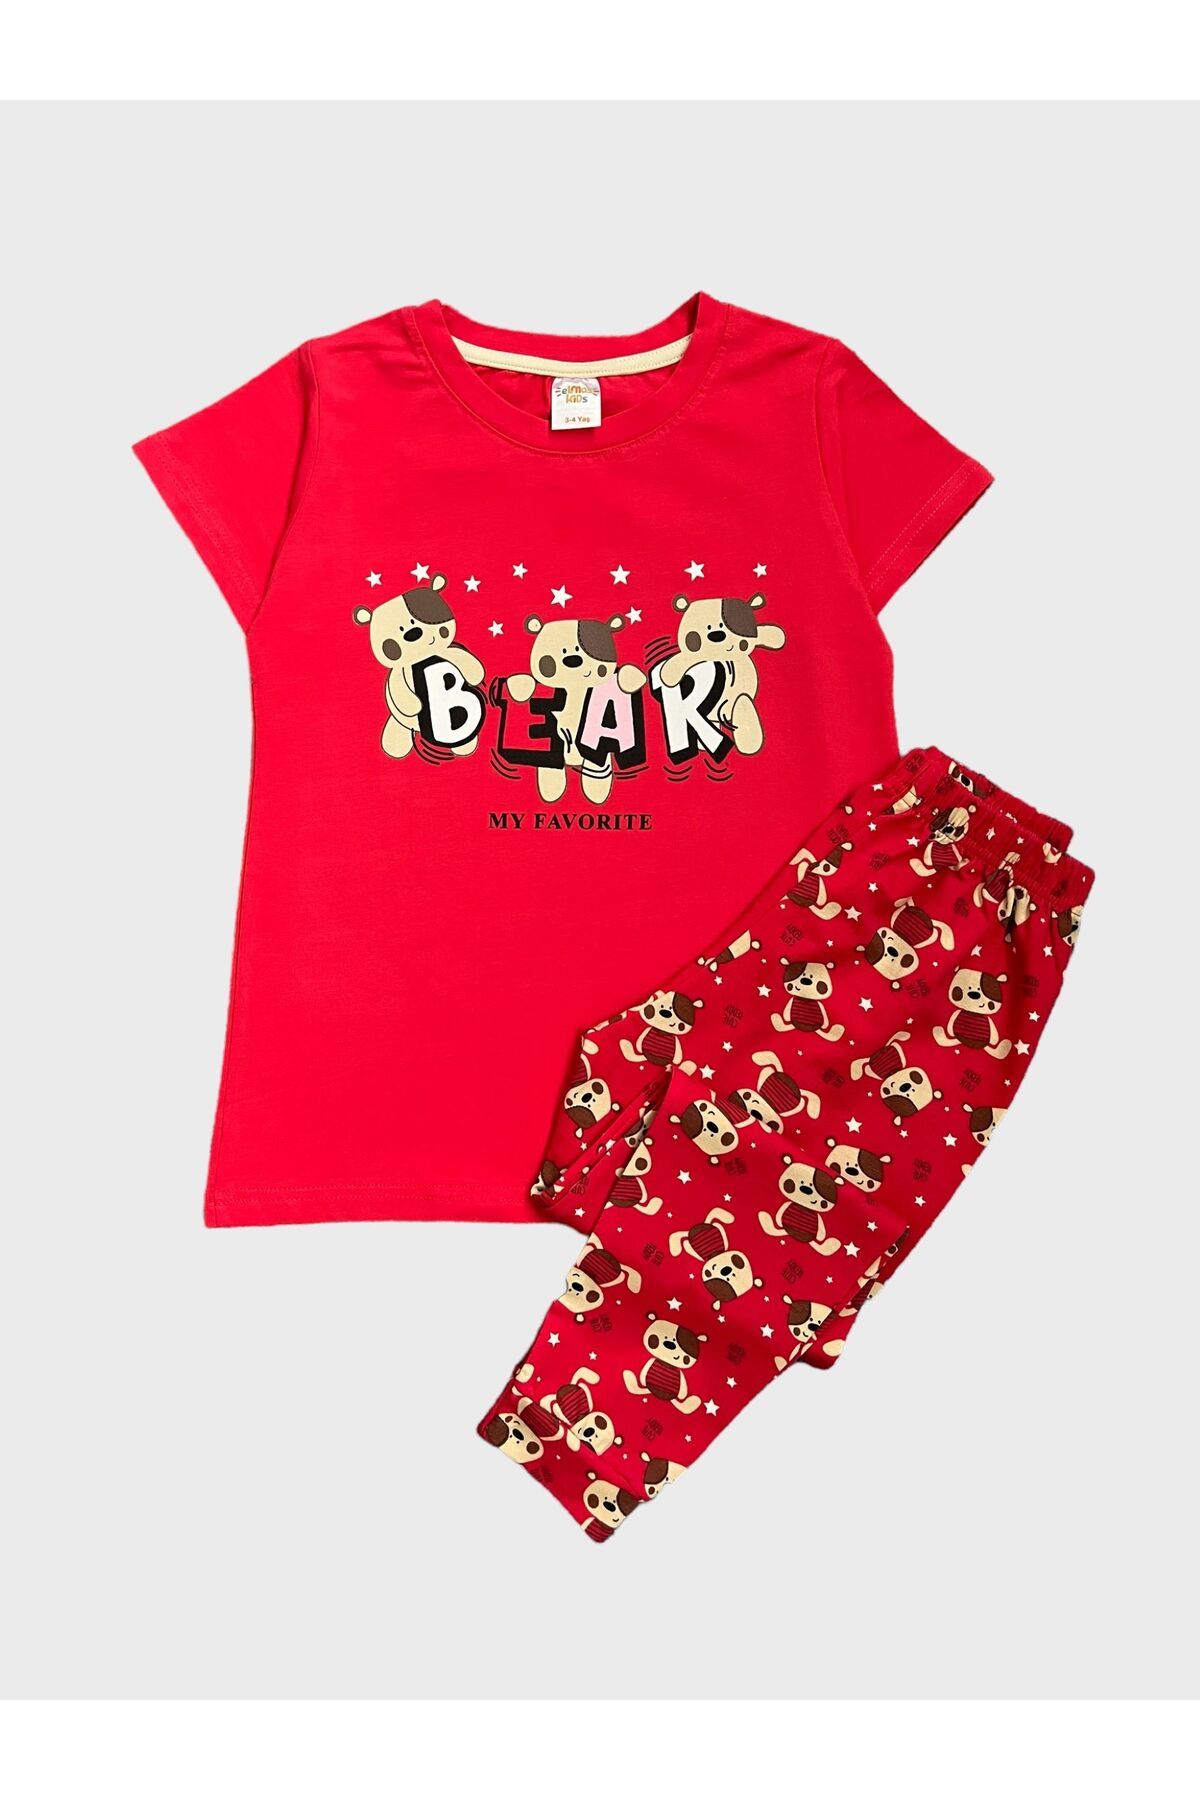 elmas kids Kız Çocuk %100 Pamuklu Bear Ayıcık Desenli Kırmızı Kısa Kollu Yazlık Pijama Takımı